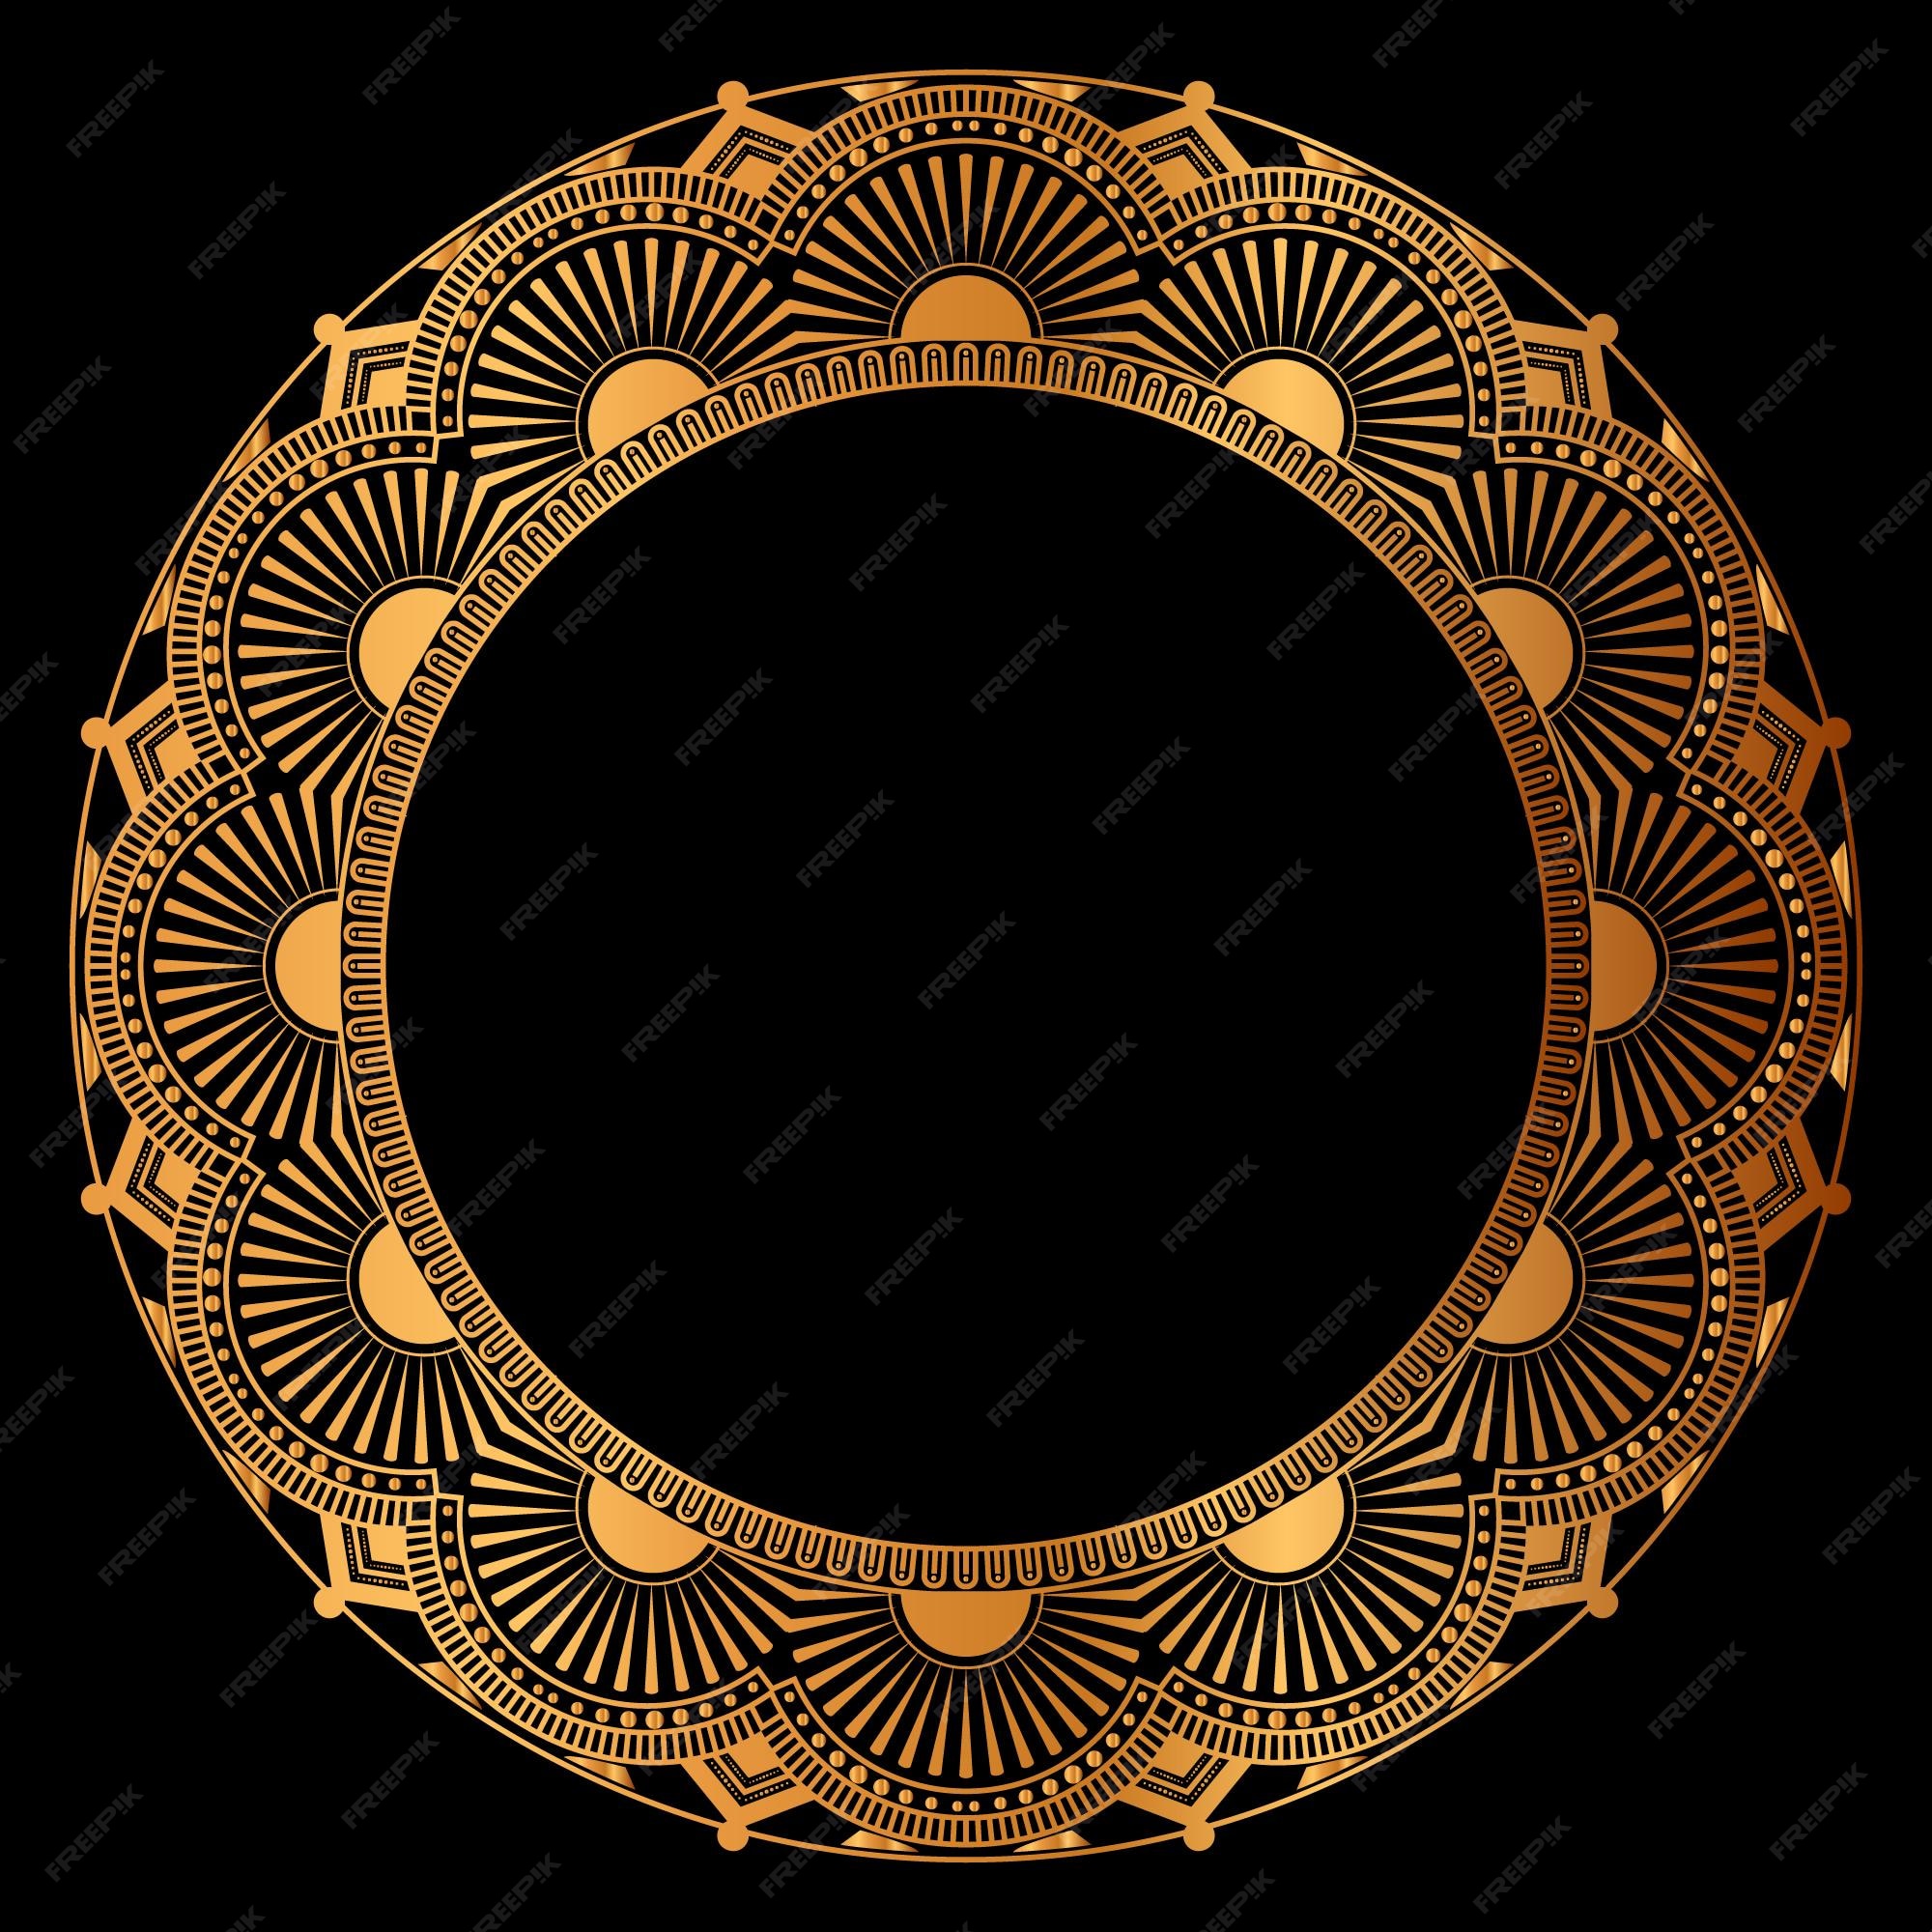 Sự sang trọng và tinh tế được thể hiện qua hộp đựng bằng vàng với mandala cổ điển vòng tròn. Một sản phẩm độc đáo và đẳng cấp, thể hiện cảm xúc và sự trân trọng đối với những giá trị cổ điển. Hãy cùng khám phá hộp đựng bằng vàng sang trọng với mandala cổ điển vòng tròn!